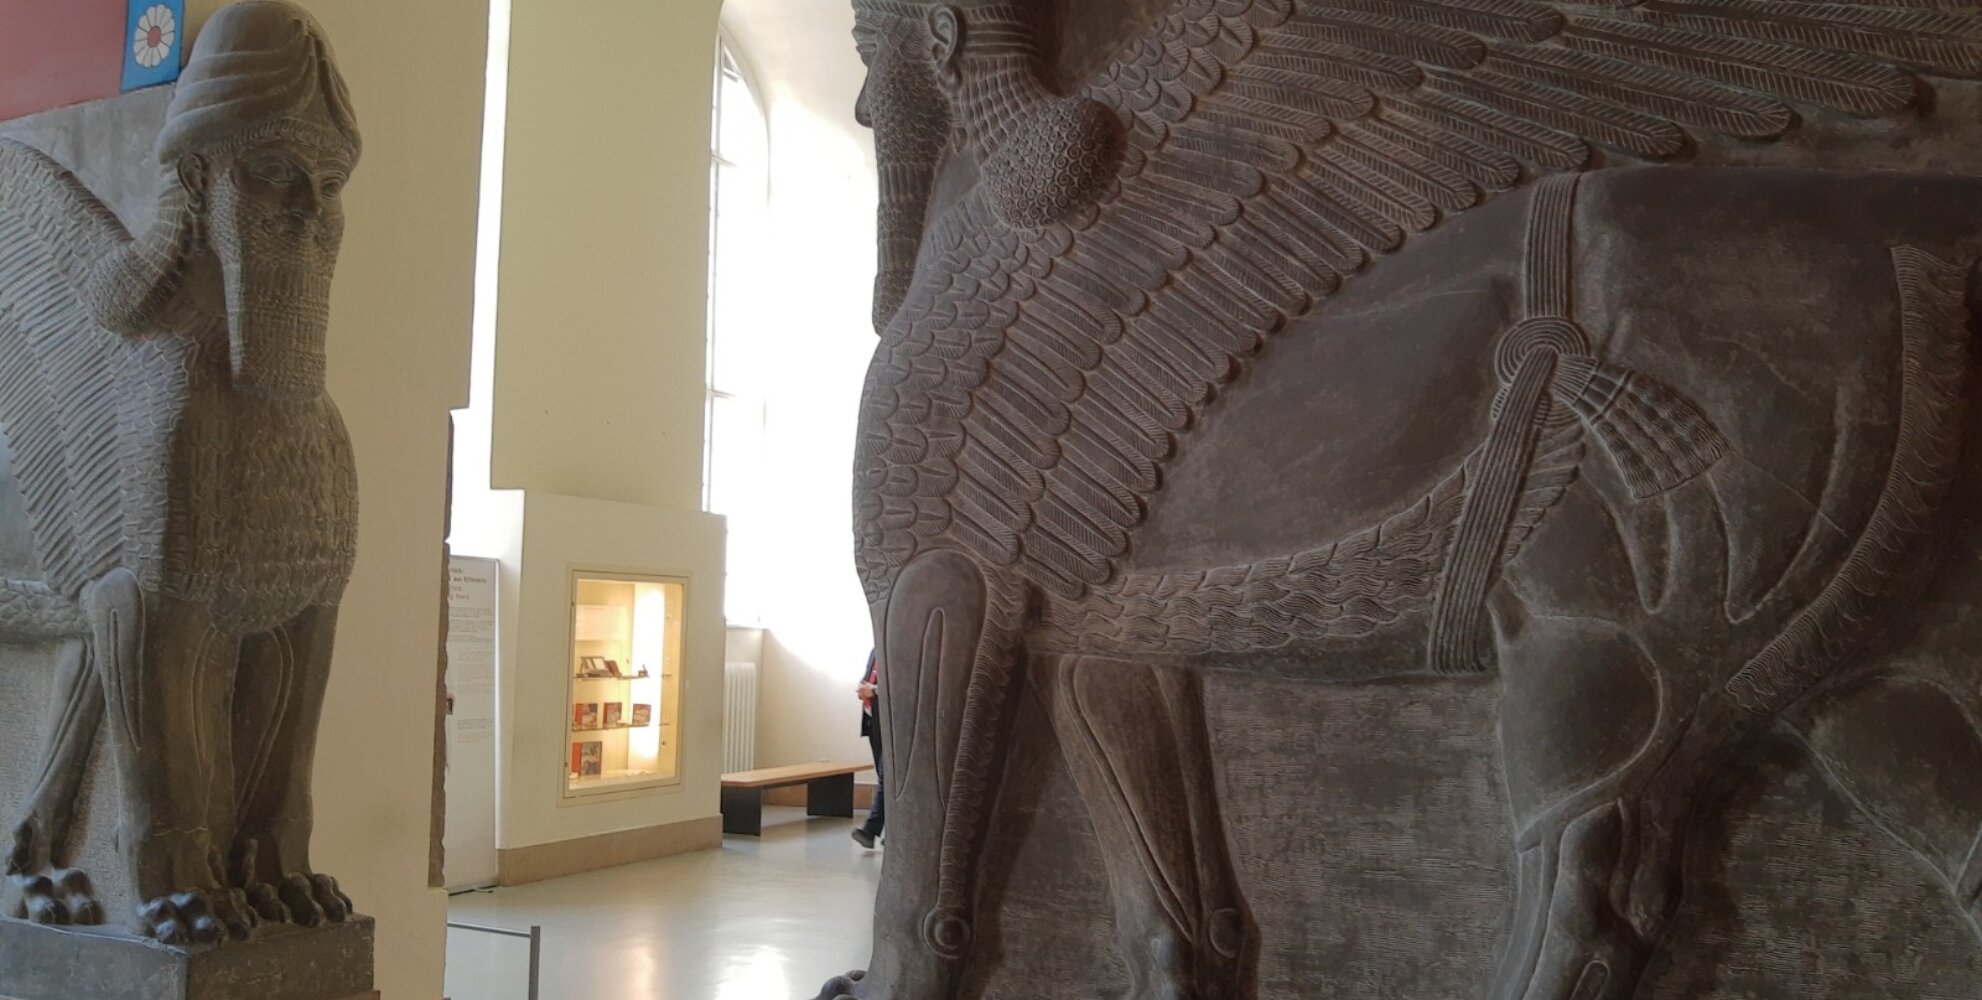 Zum Schutz für den König Gipsformung Das Orginal wurde ums 9.Jh.v. Chr aus Alabastar hergestellt.  Es zeigt zwei Mischwesen, die den Palastraum bewachen.